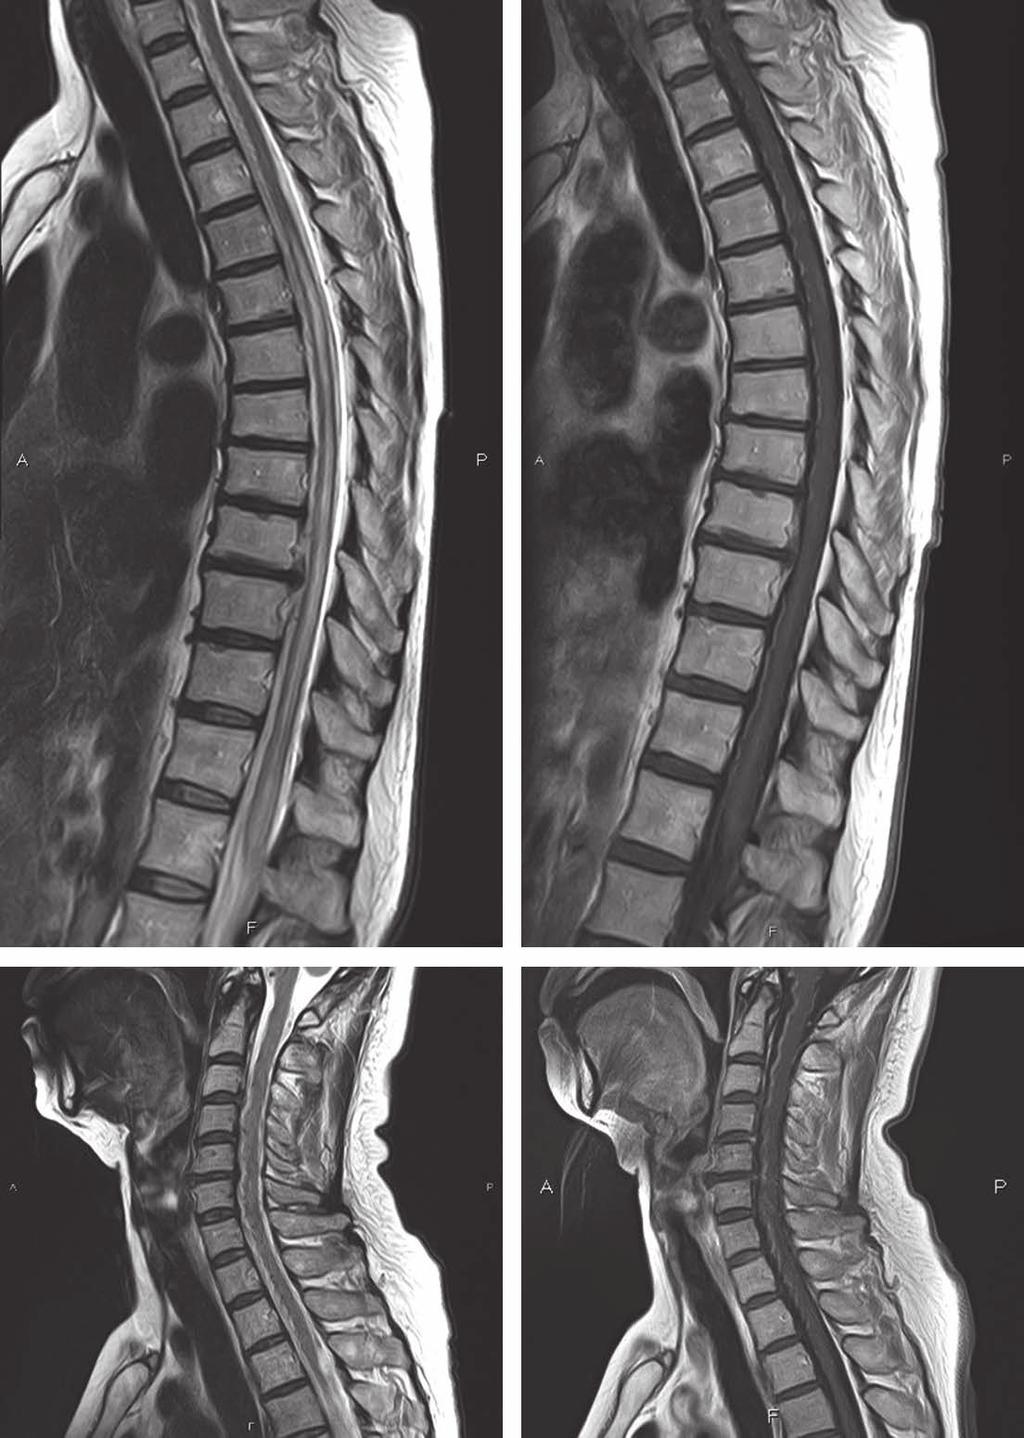 56:38 56 巻 1 号 (2016:1) MRI images of spinal cord. (A): Thoracic sagittal T 2 -weightd images (1.